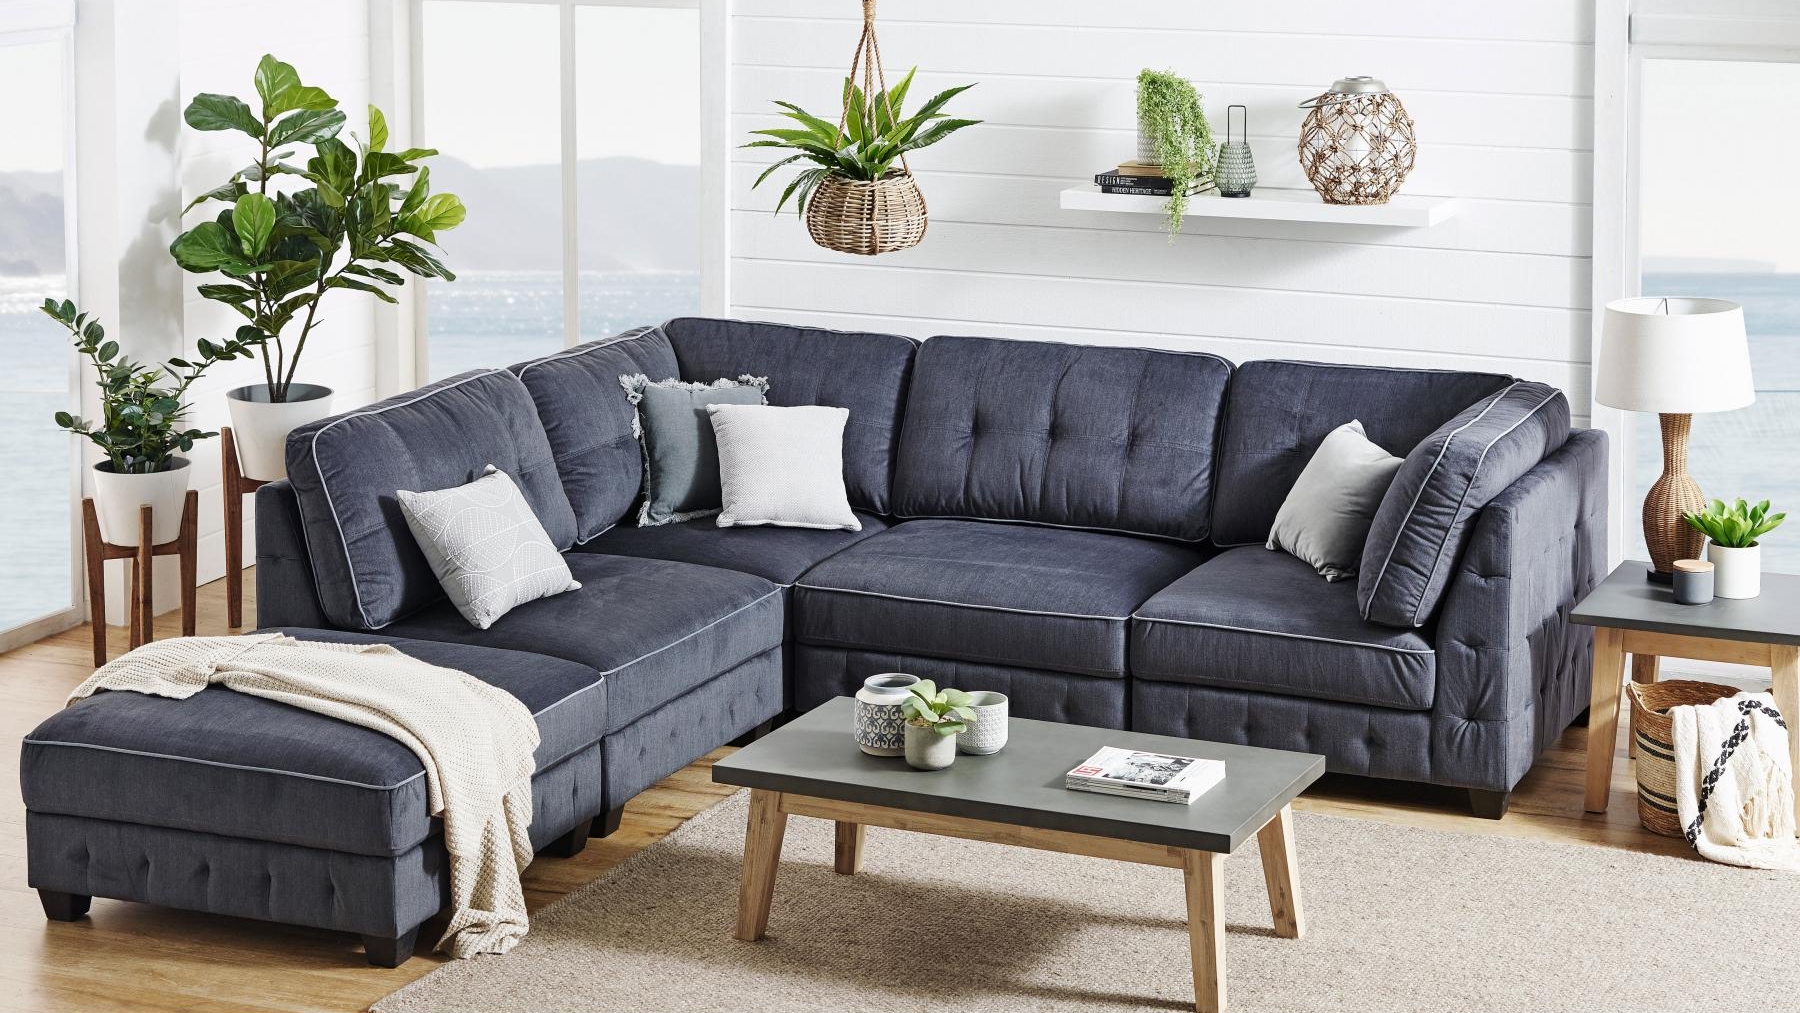 Sofa module màu xám này là một lựa chọn lý tưởng để nâng cao sự thoải mái và tăng thêm phong cách hiện đại cho ngôi nhà. Hình thức đẹp, màu trang nhã, cấu hình rộng mang đến giải pháp thư giãn tiện dụng nhưng vẫn tối giản.